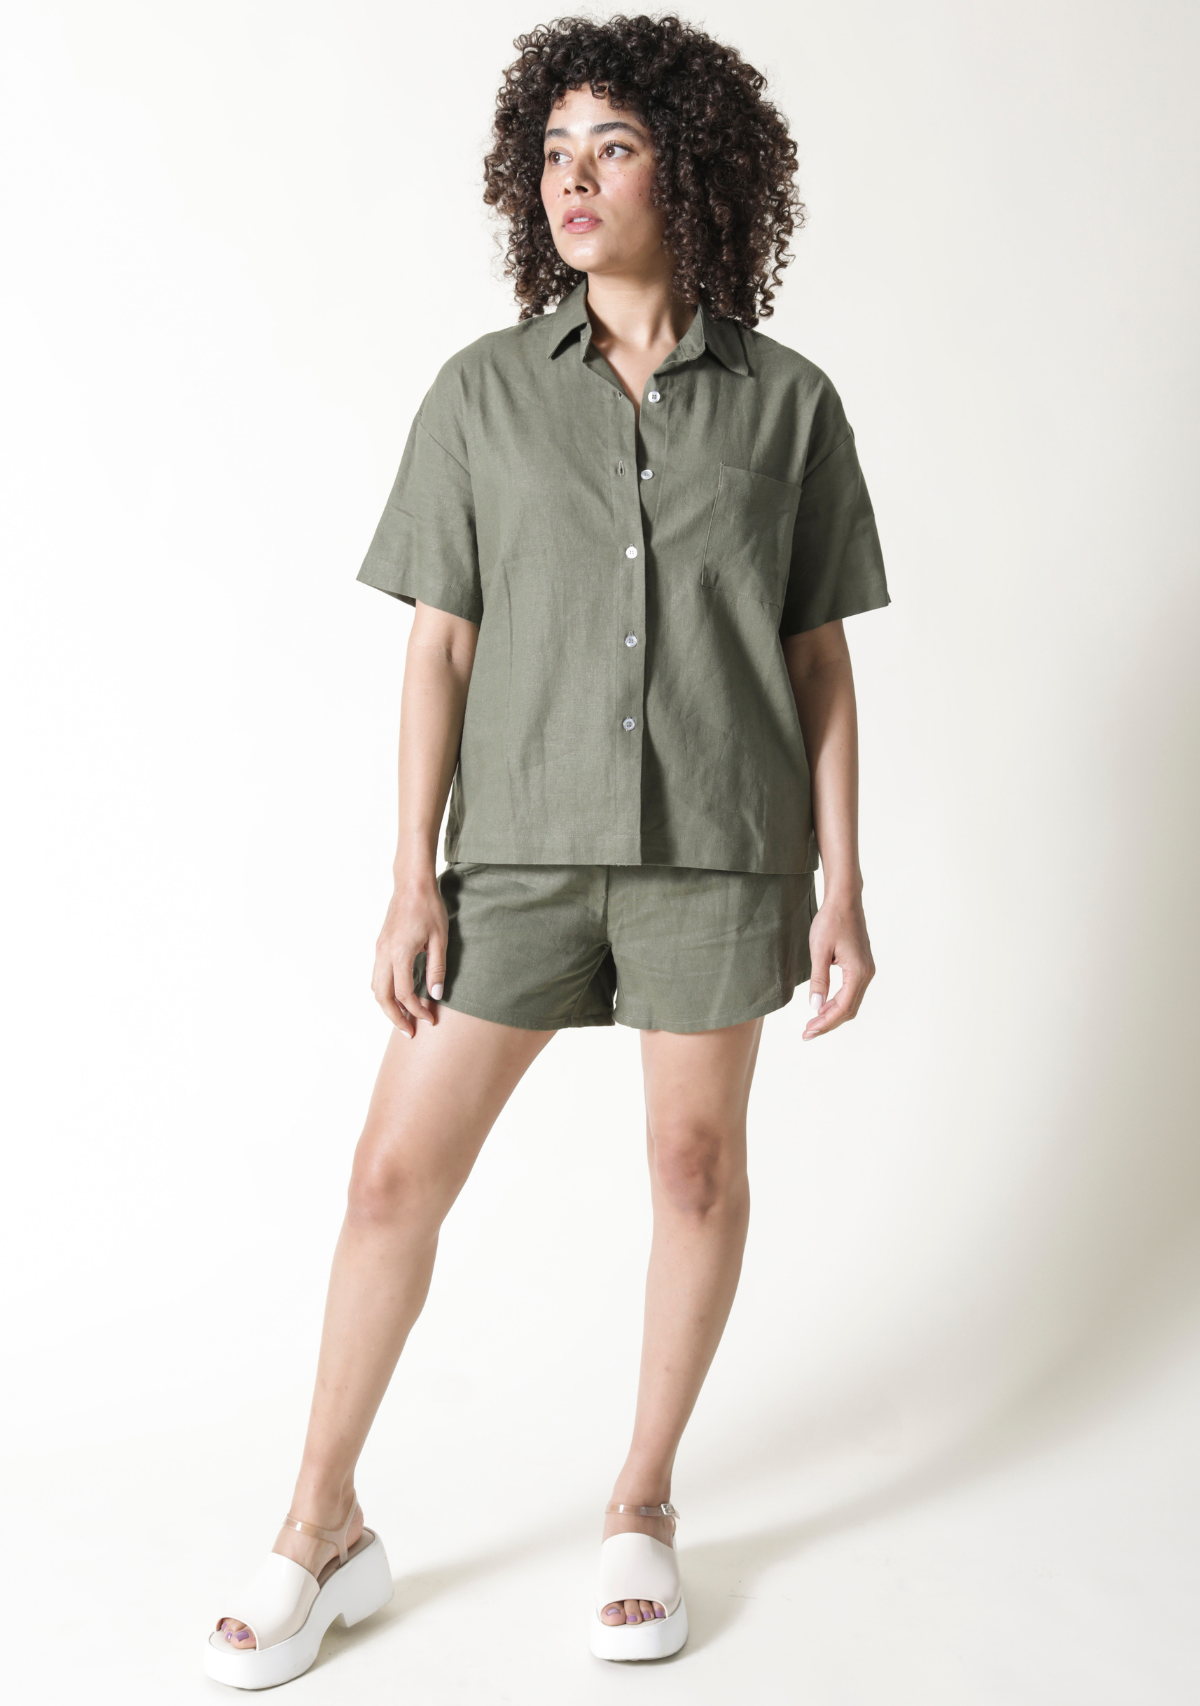 Women's Linen Shirt Olive Color sizes XS-3X